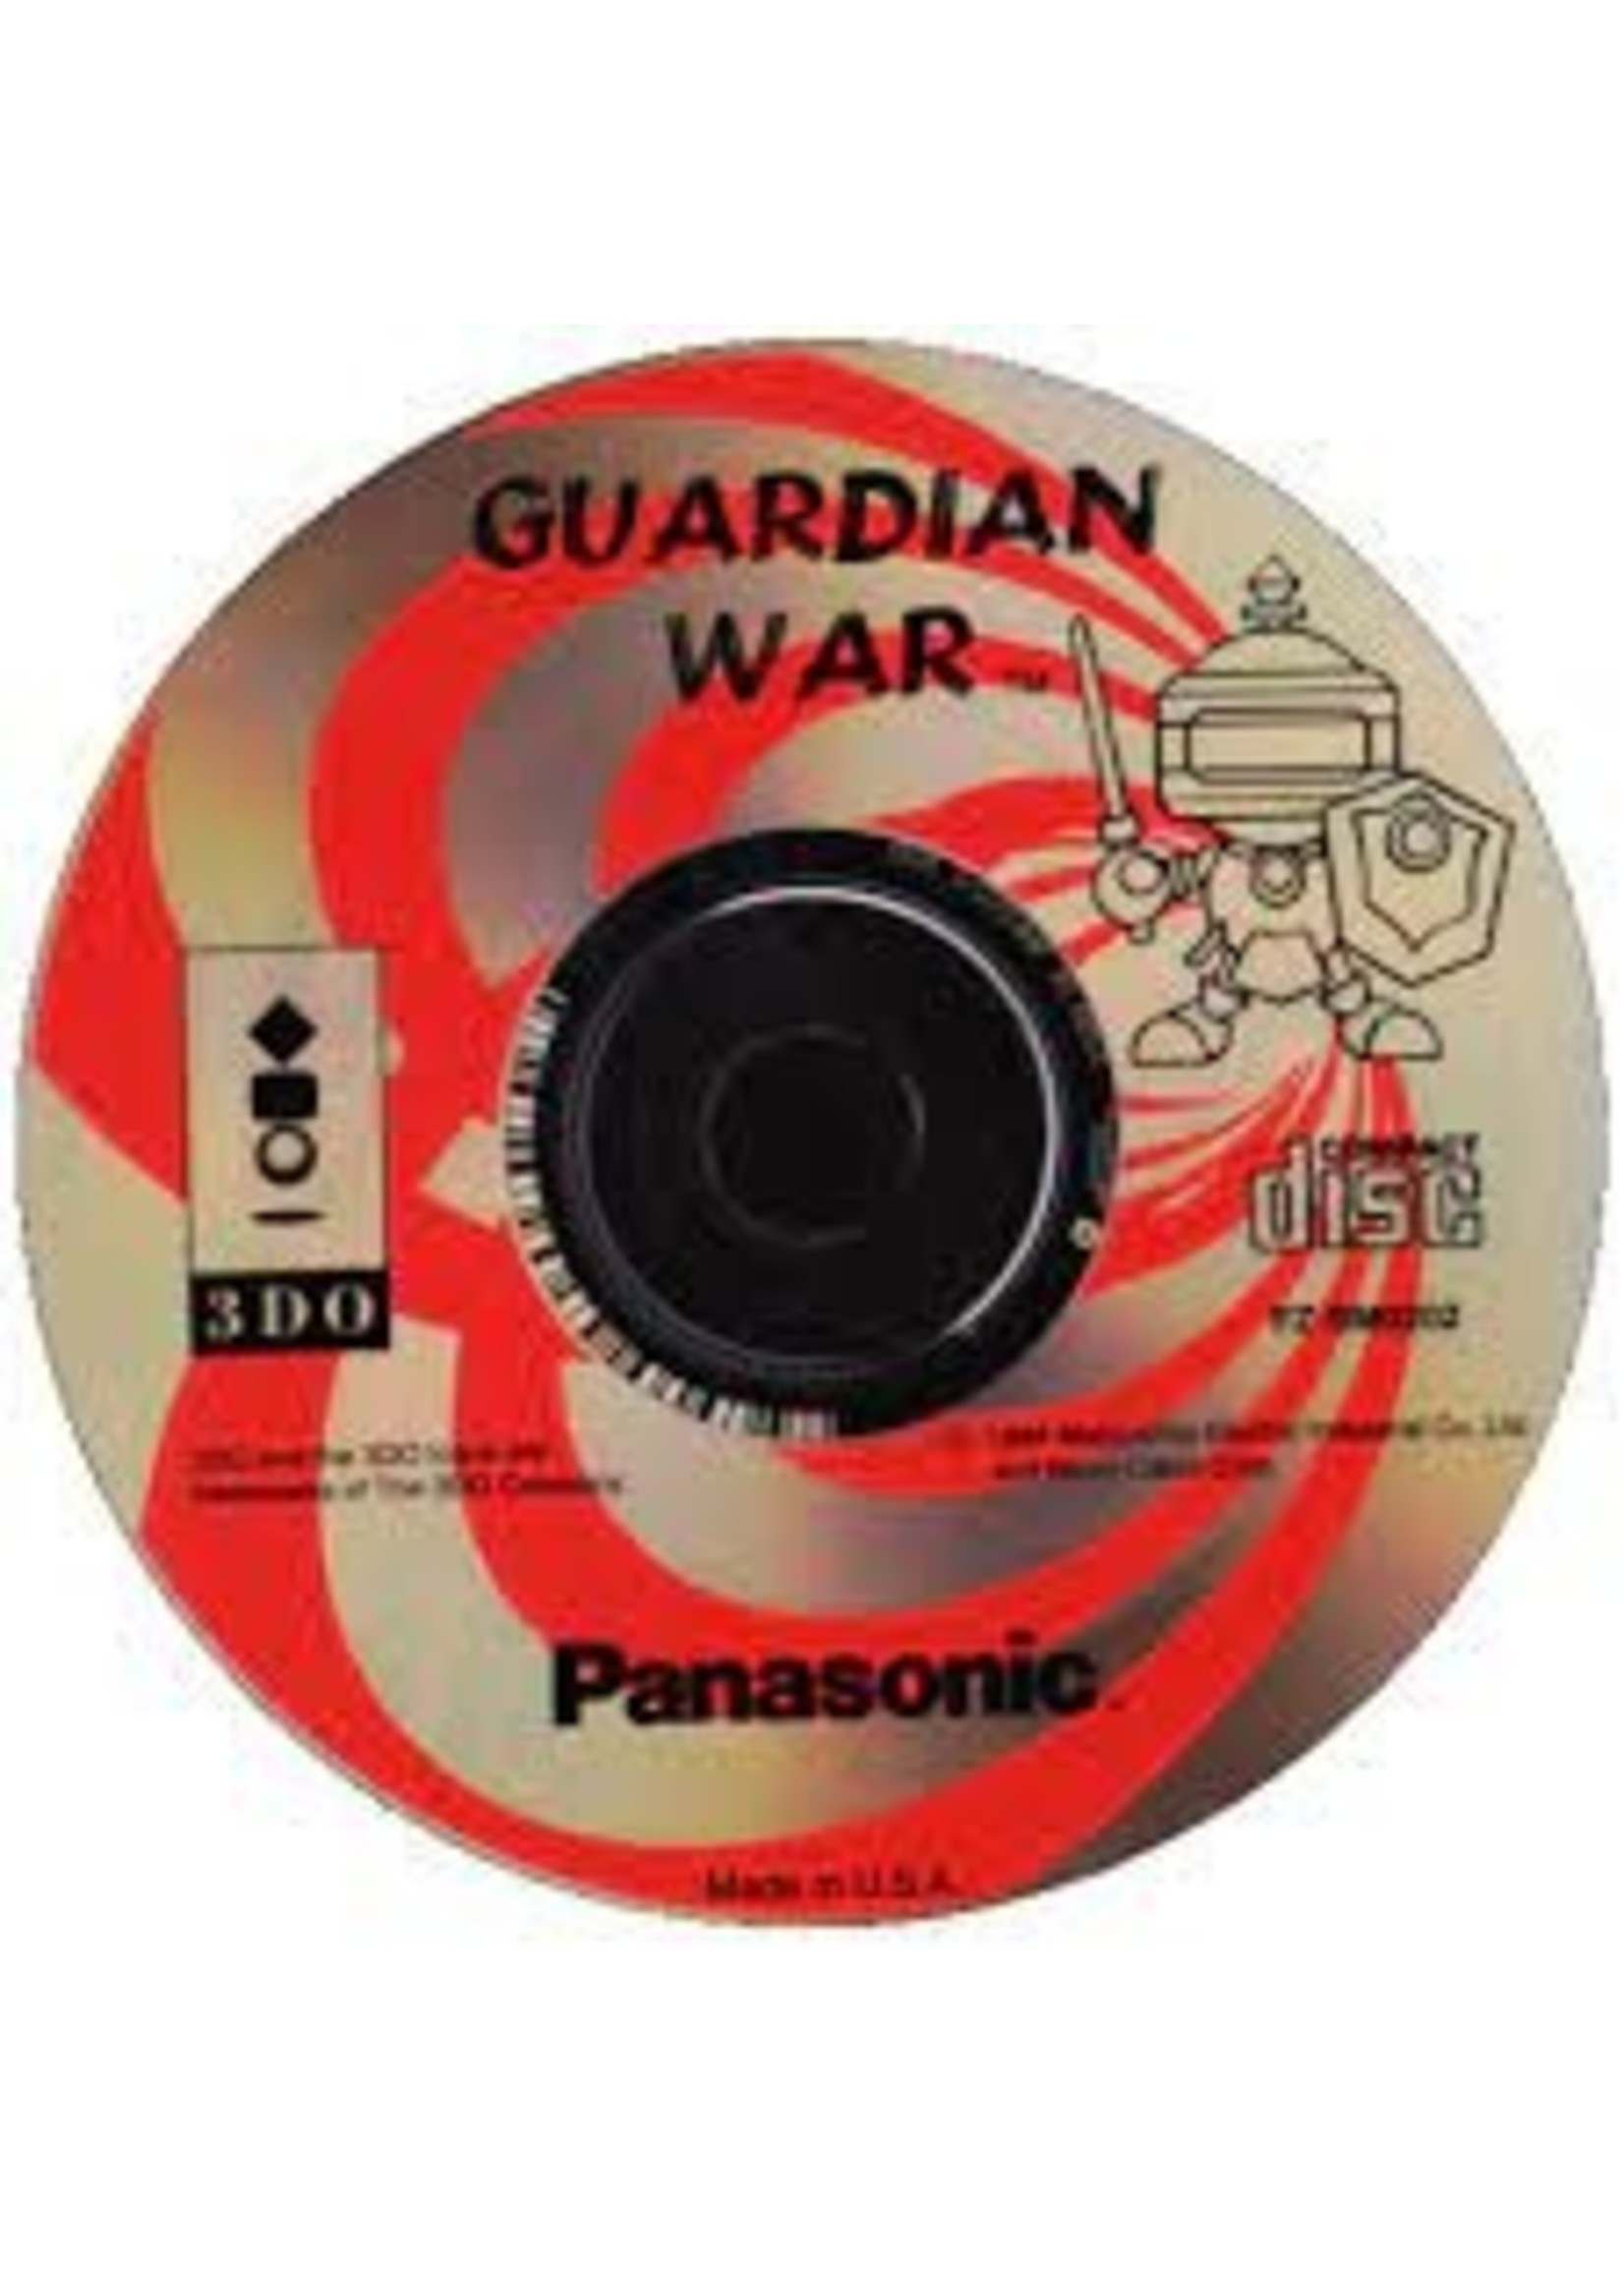 Panasonic 3DO Guardian War (3DO)